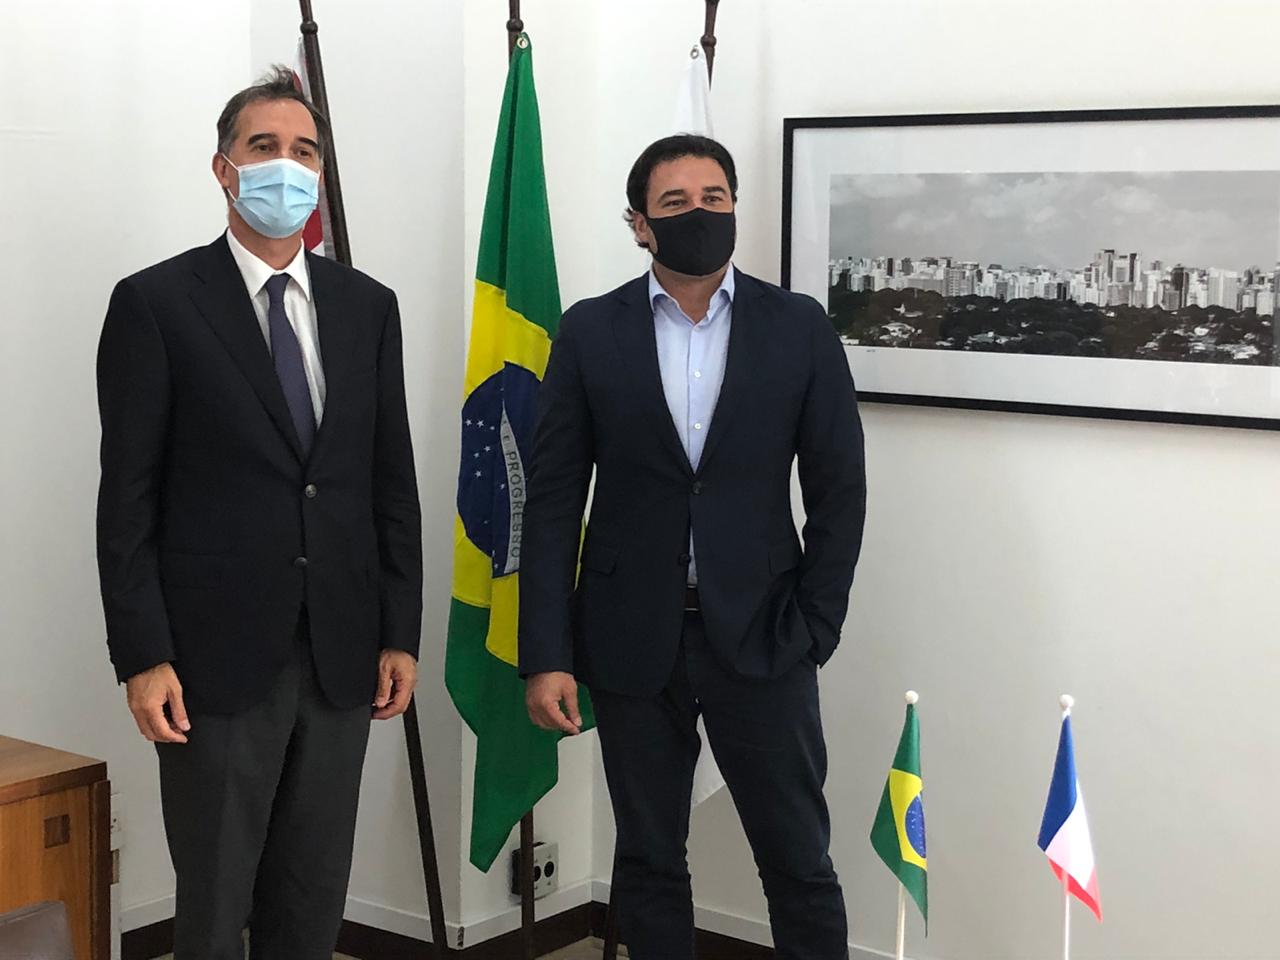 O Secretário de Relações Internacionais, Luiz Alvaro, e o Novo Cônsul da França lado a lado.